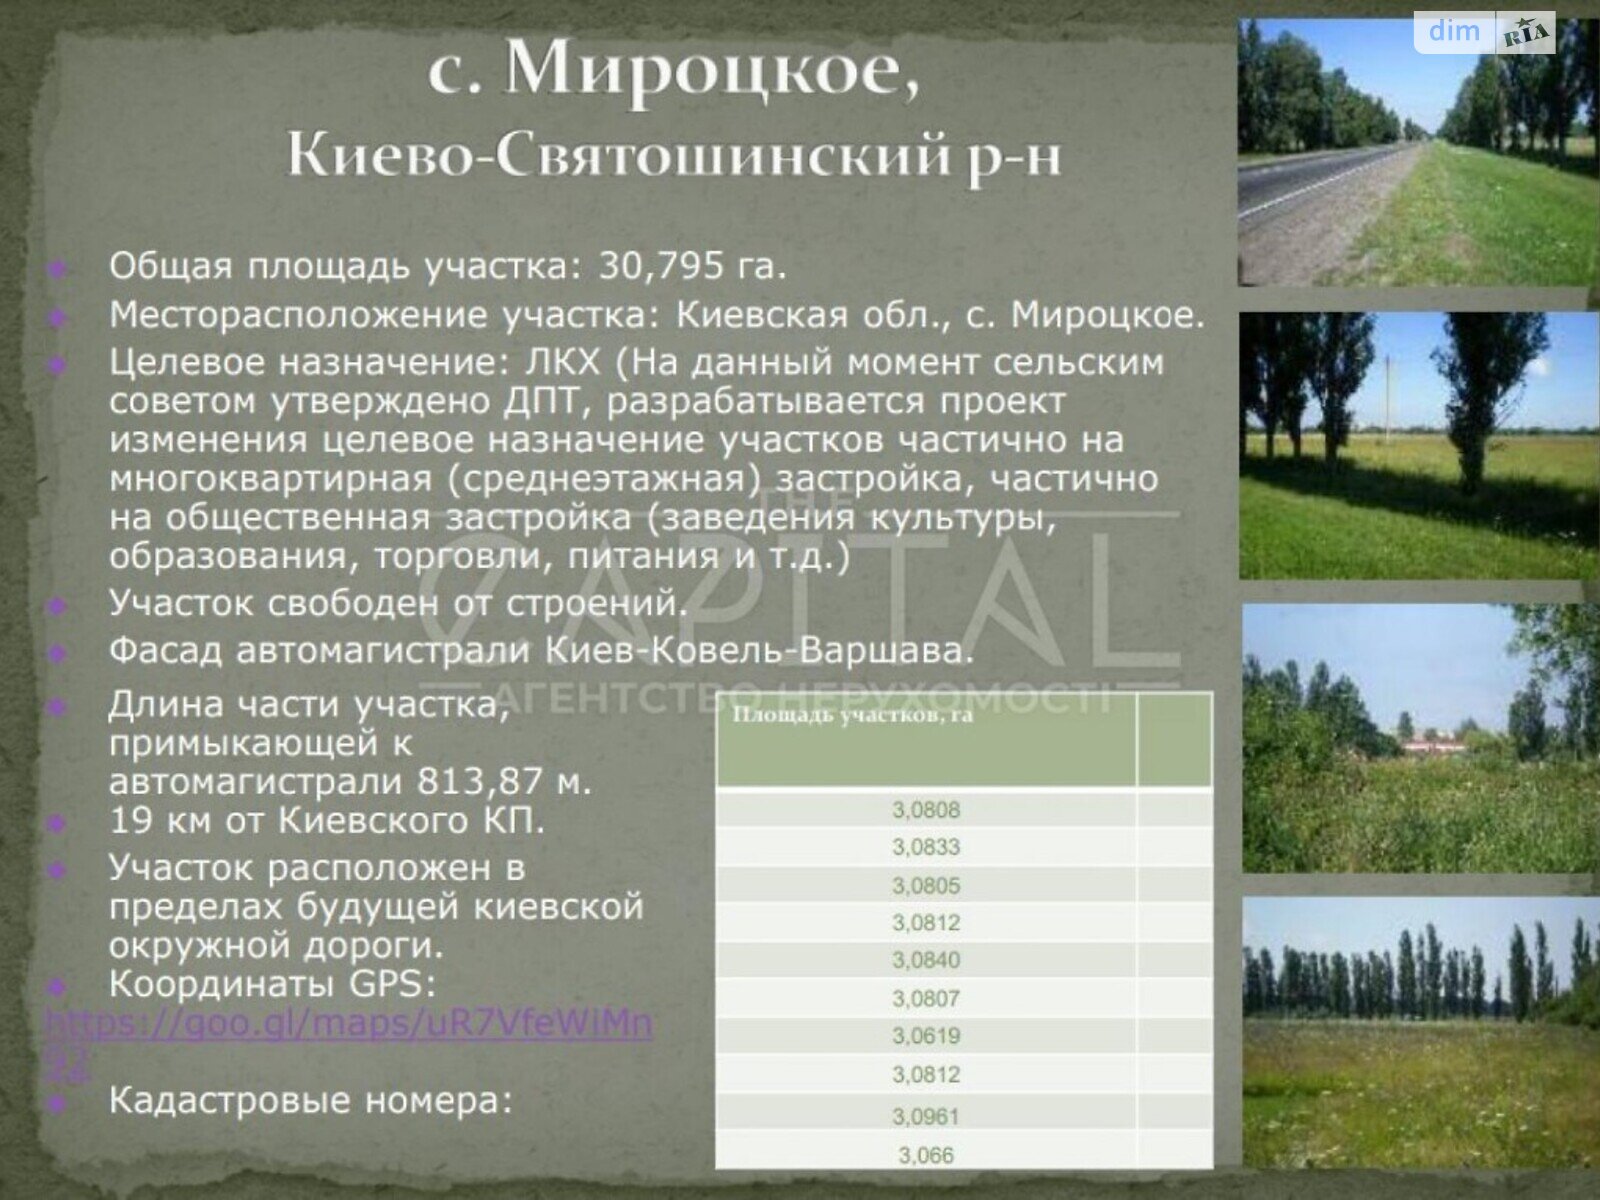 Земельный участок сельскохозяйственного назначения в Мироцком, площадь 3079 соток фото 1